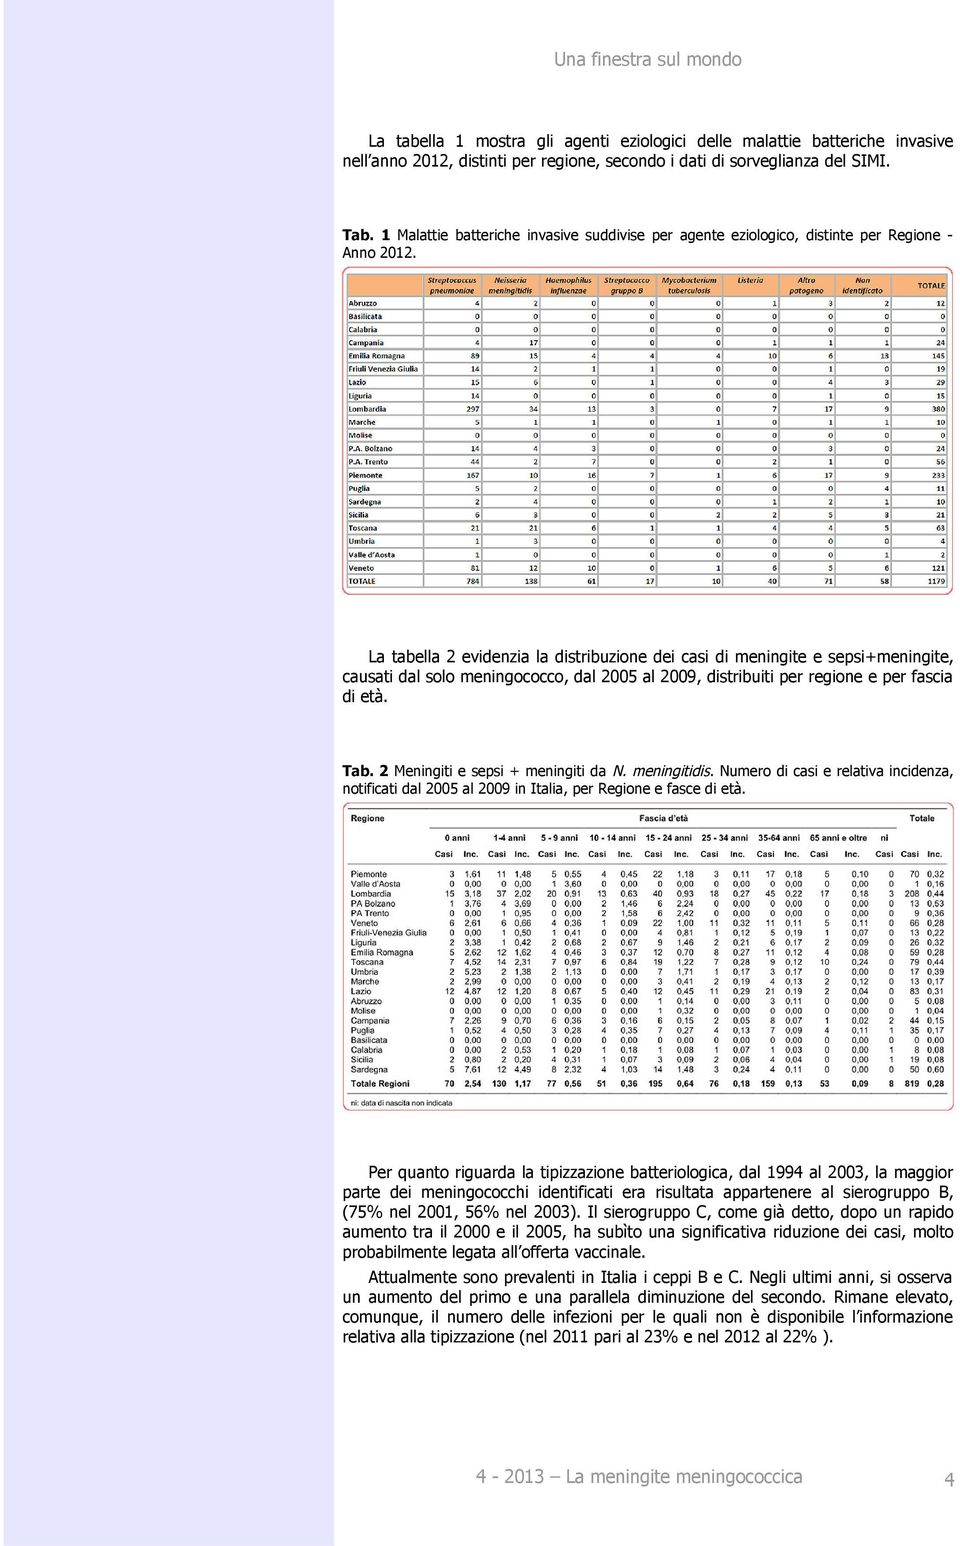 La tabella 2 evidenzia la distribuzione dei casi di meningite e sepsi+meningite, causati dal solo meningococco, dal 2005 al 2009, distribuiti per regione e per fascia di età. Tab.